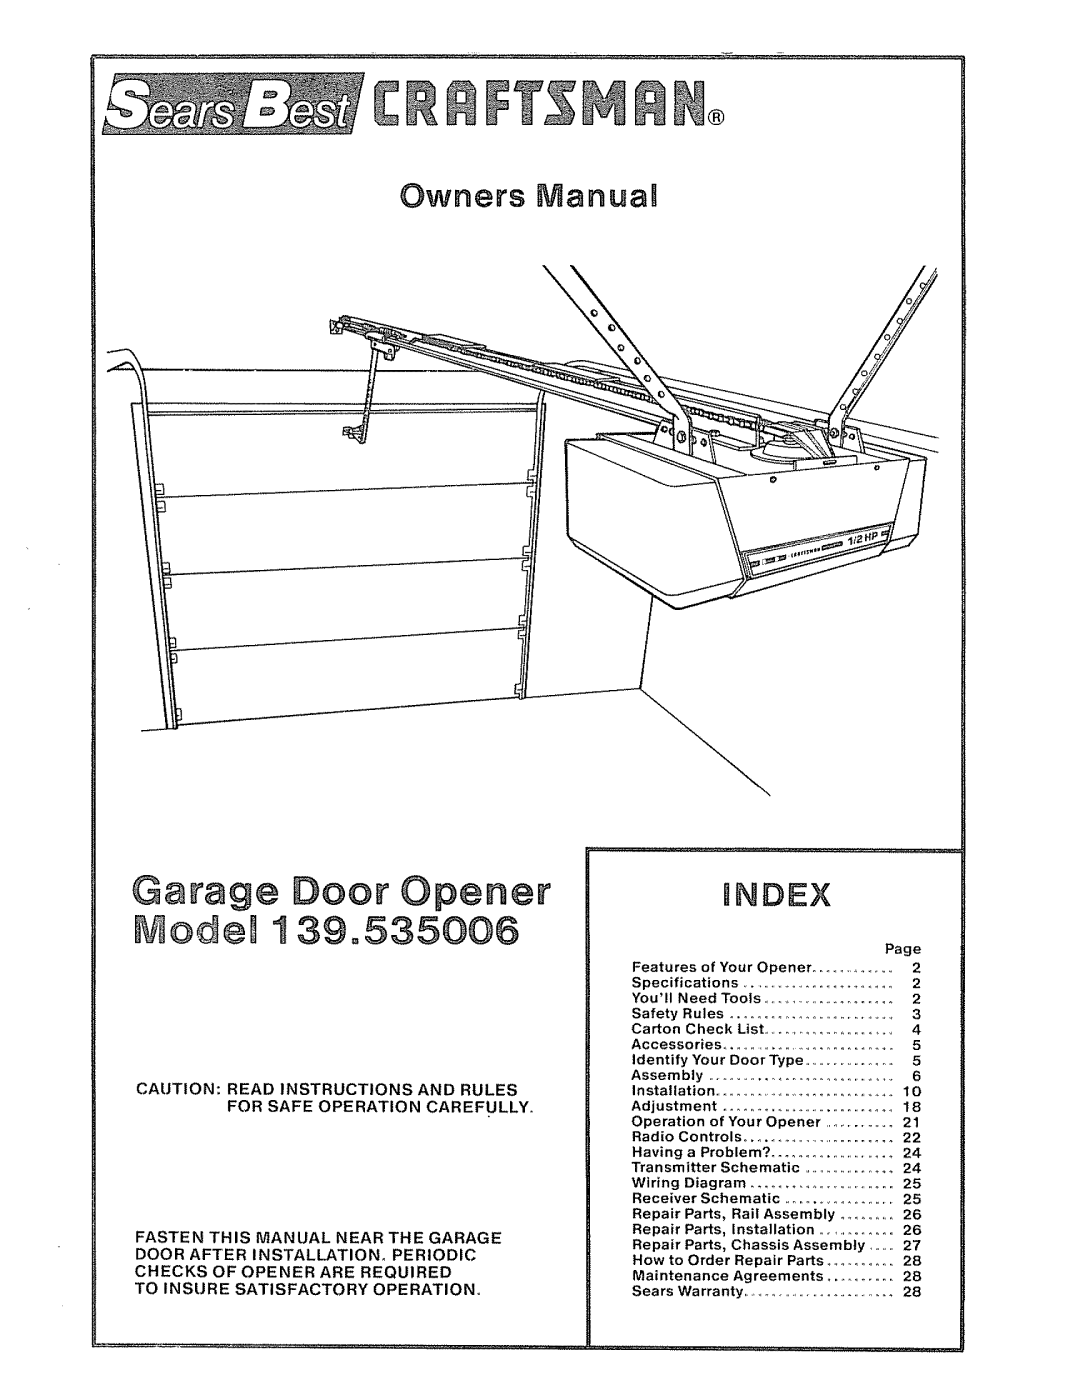 Craftsman 39535006 specifications Manua, Bndex, Door Opener, Owners 